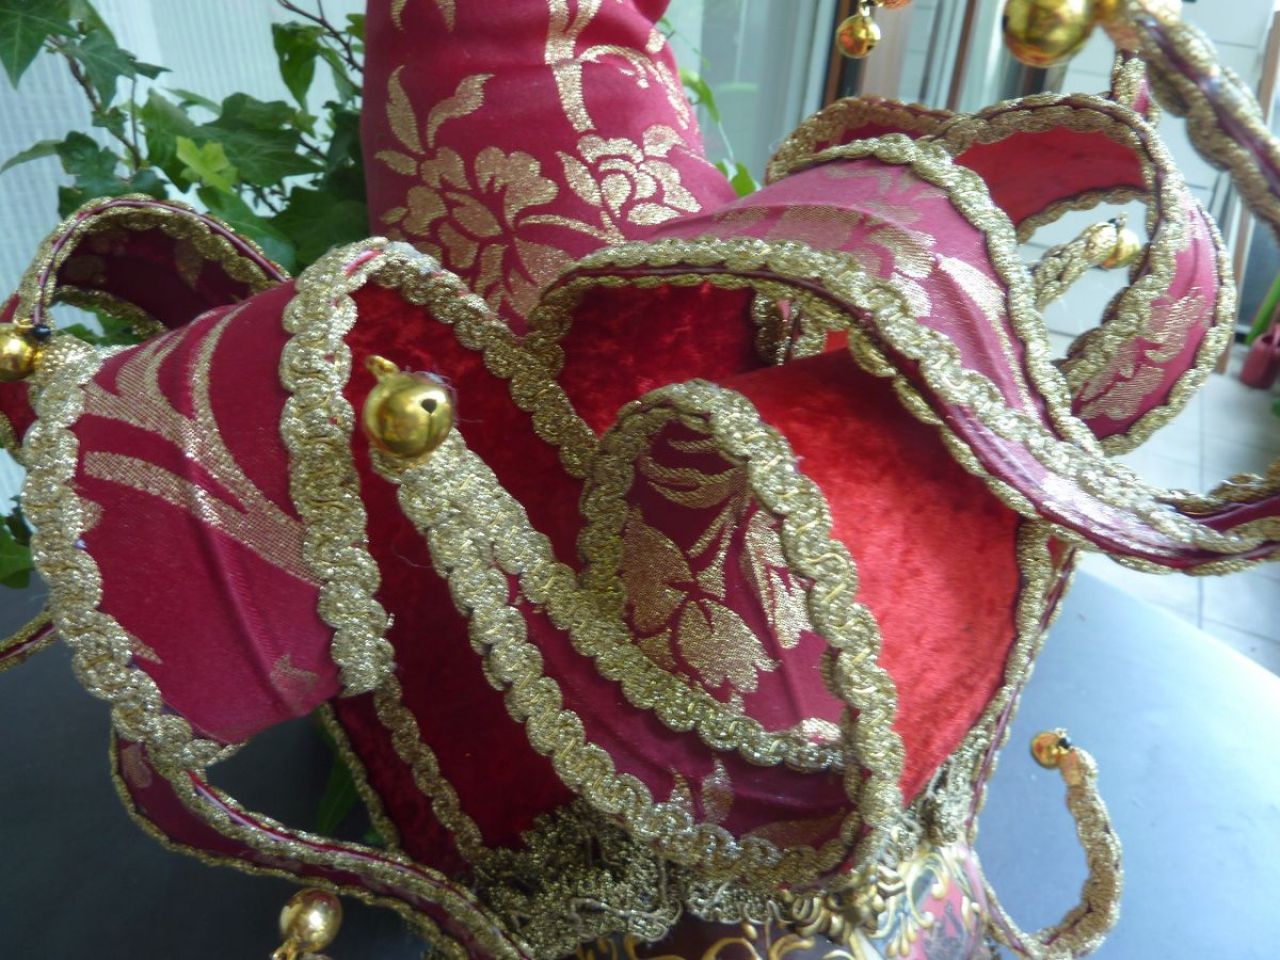 masque jolly avec magnifique travail en tissu et velours sur le chapeau, visage décoré avec cartes tarot